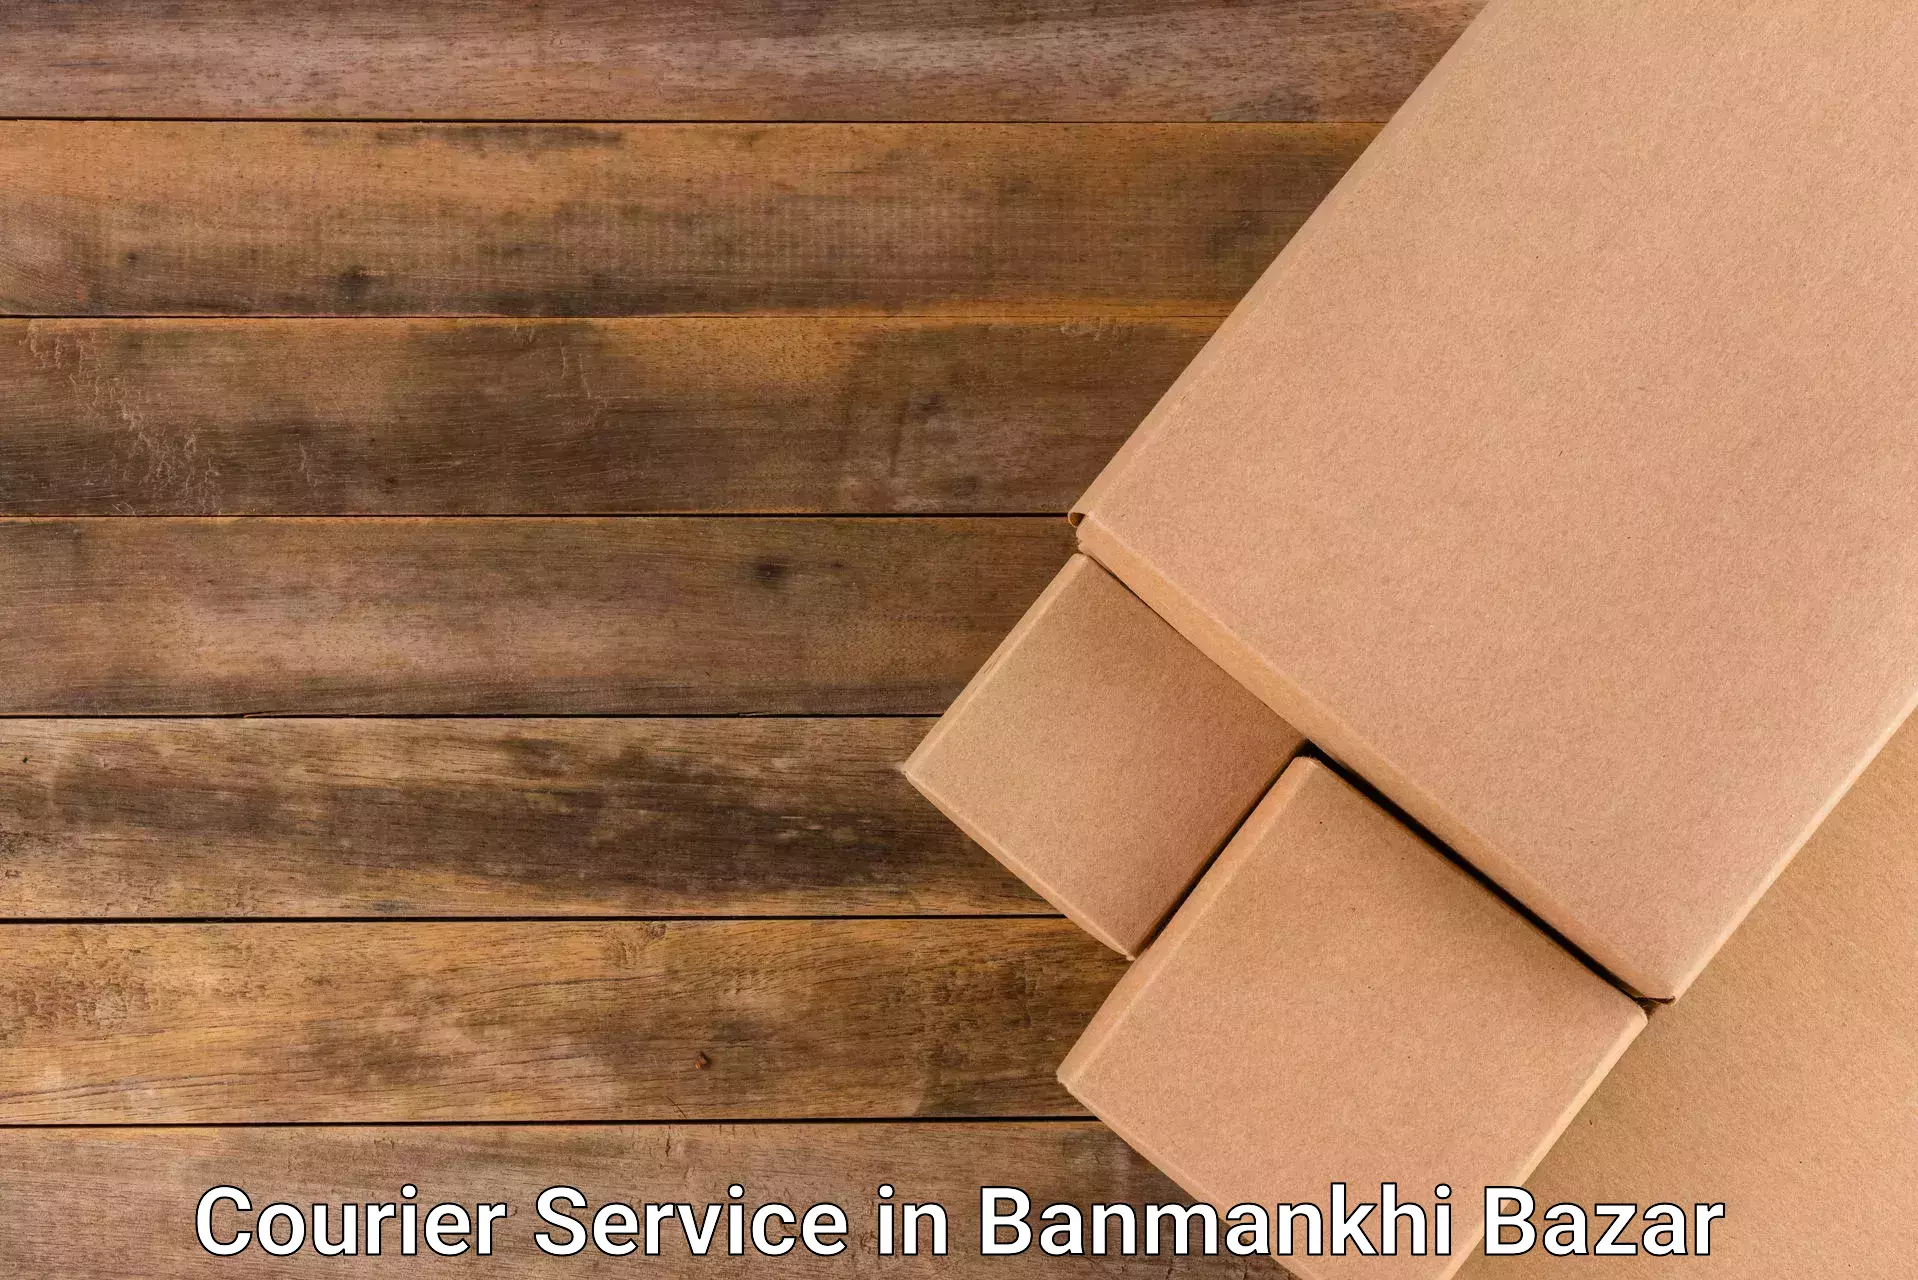 High-efficiency logistics in Banmankhi Bazar